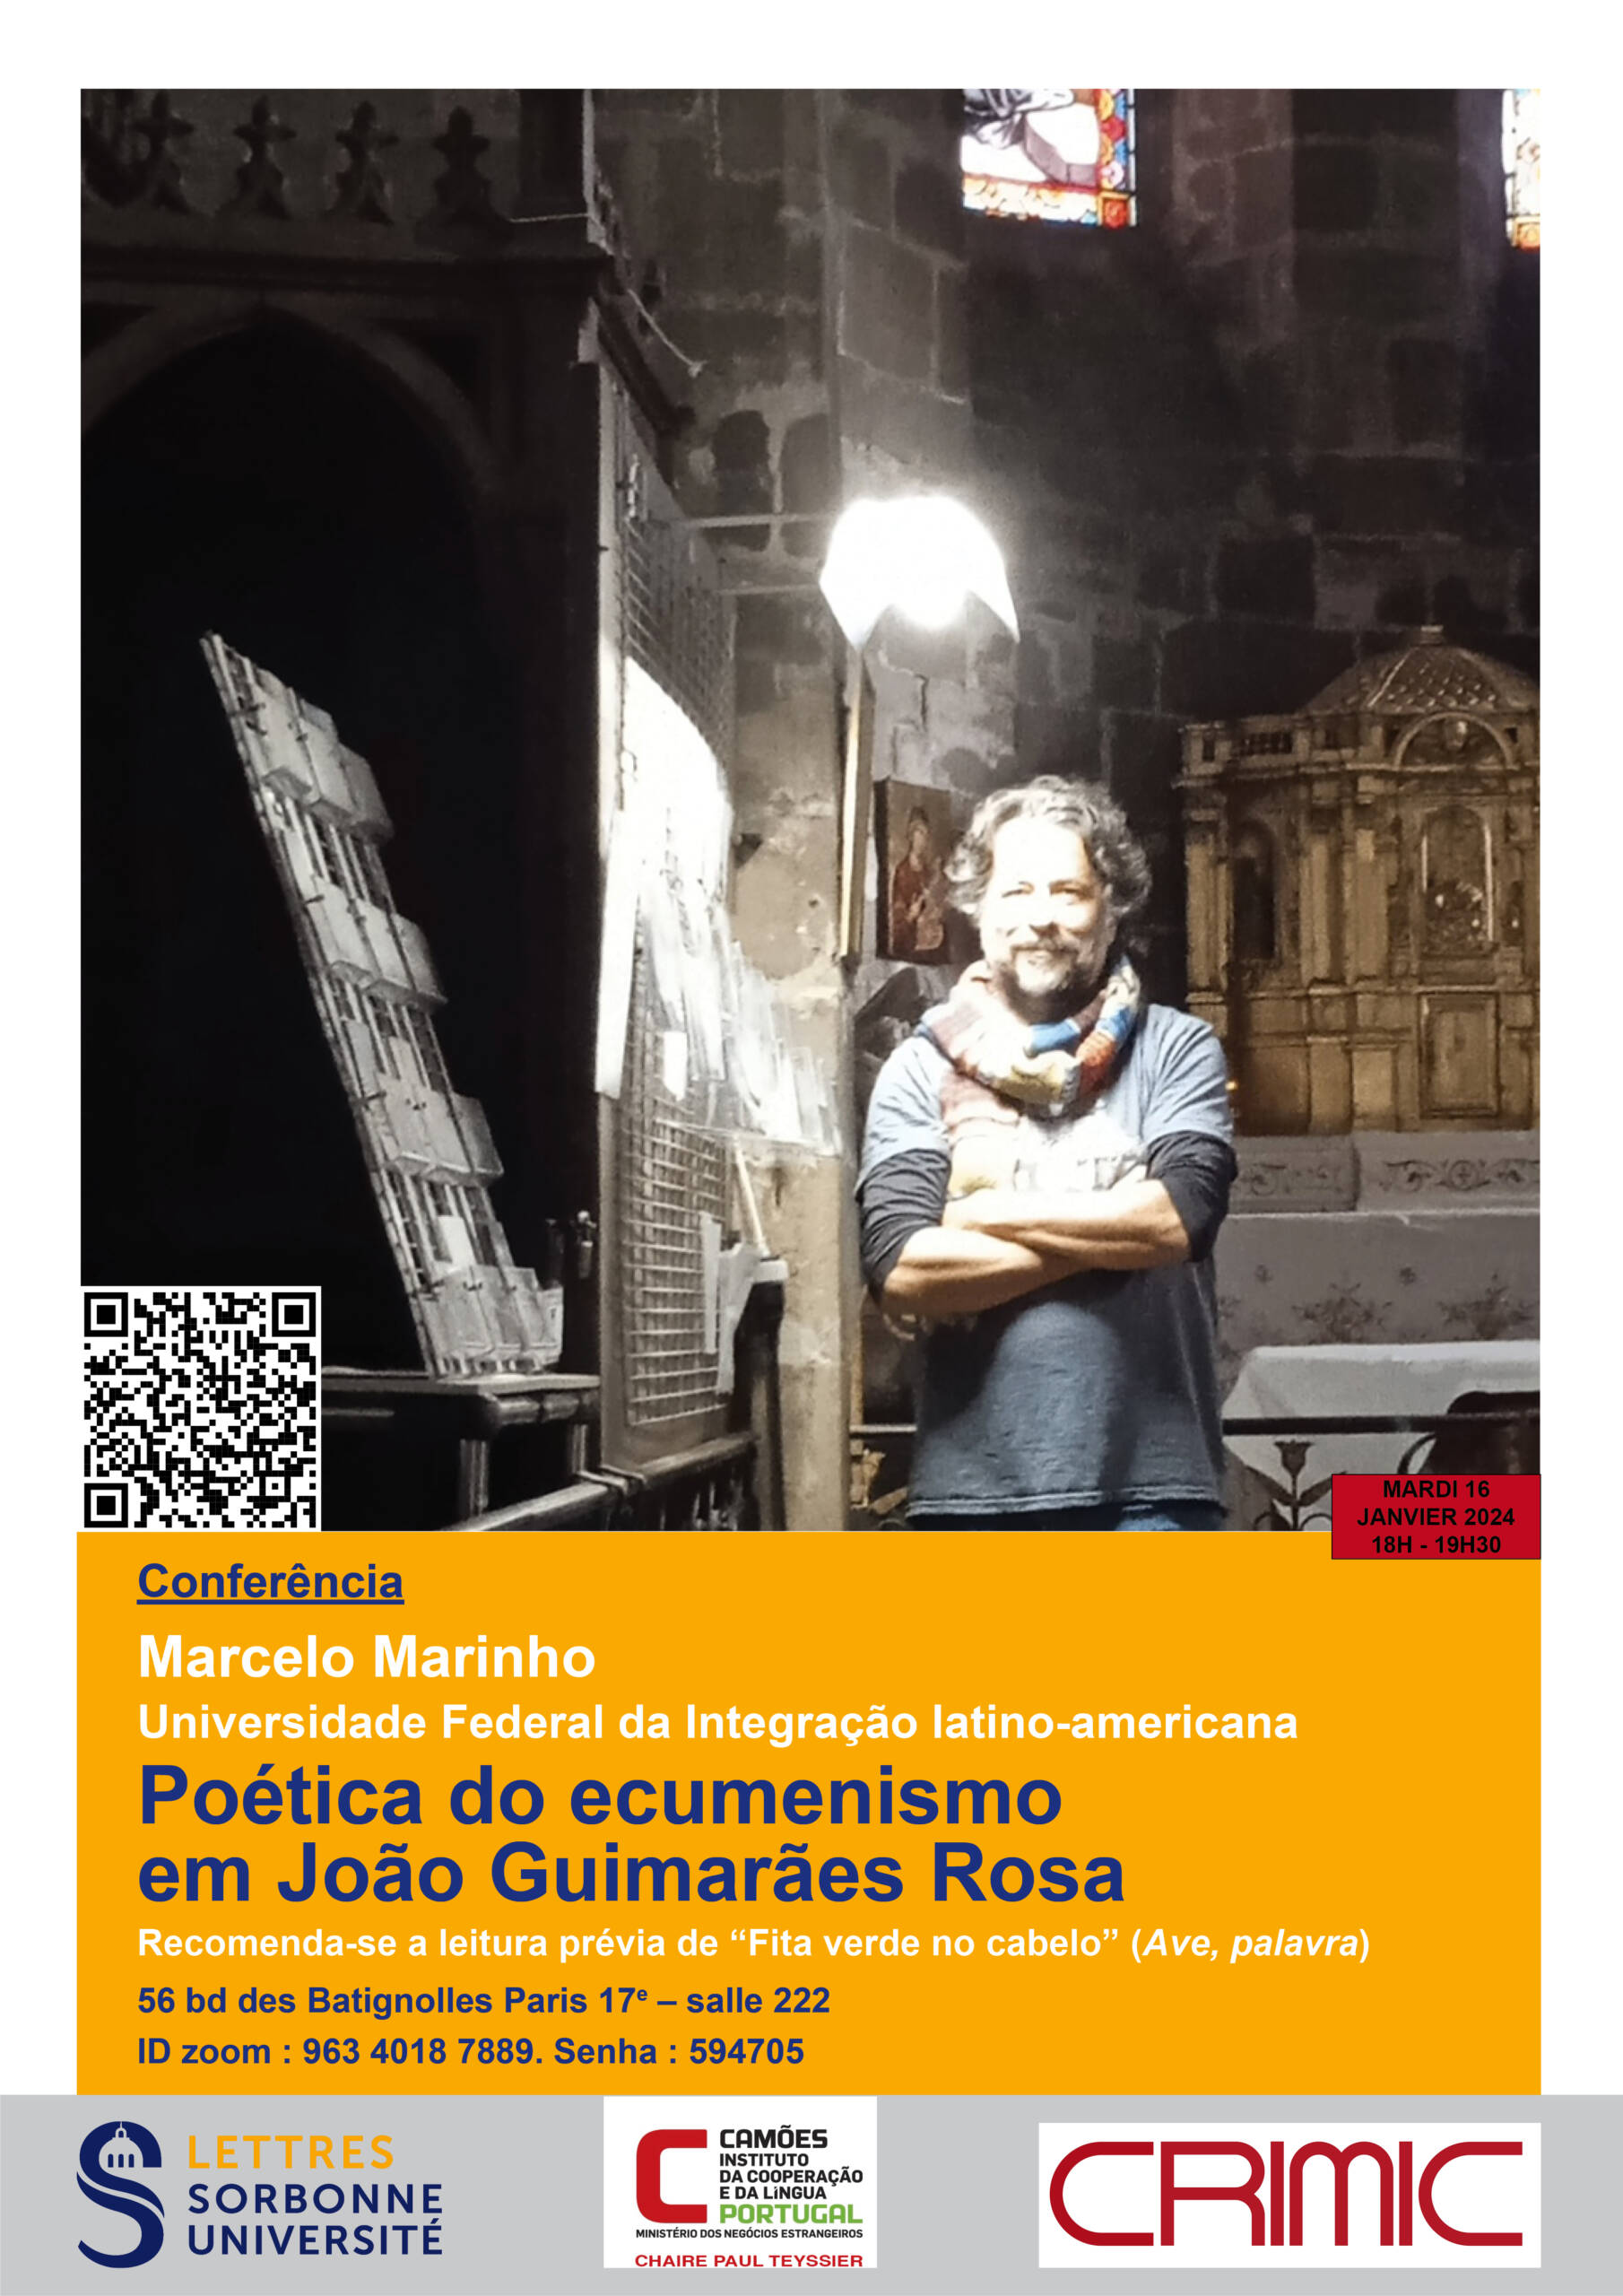 Poética do ecumenismo em João Guimarães Rosa, conferência de Marcelo Marinho (UNILA)